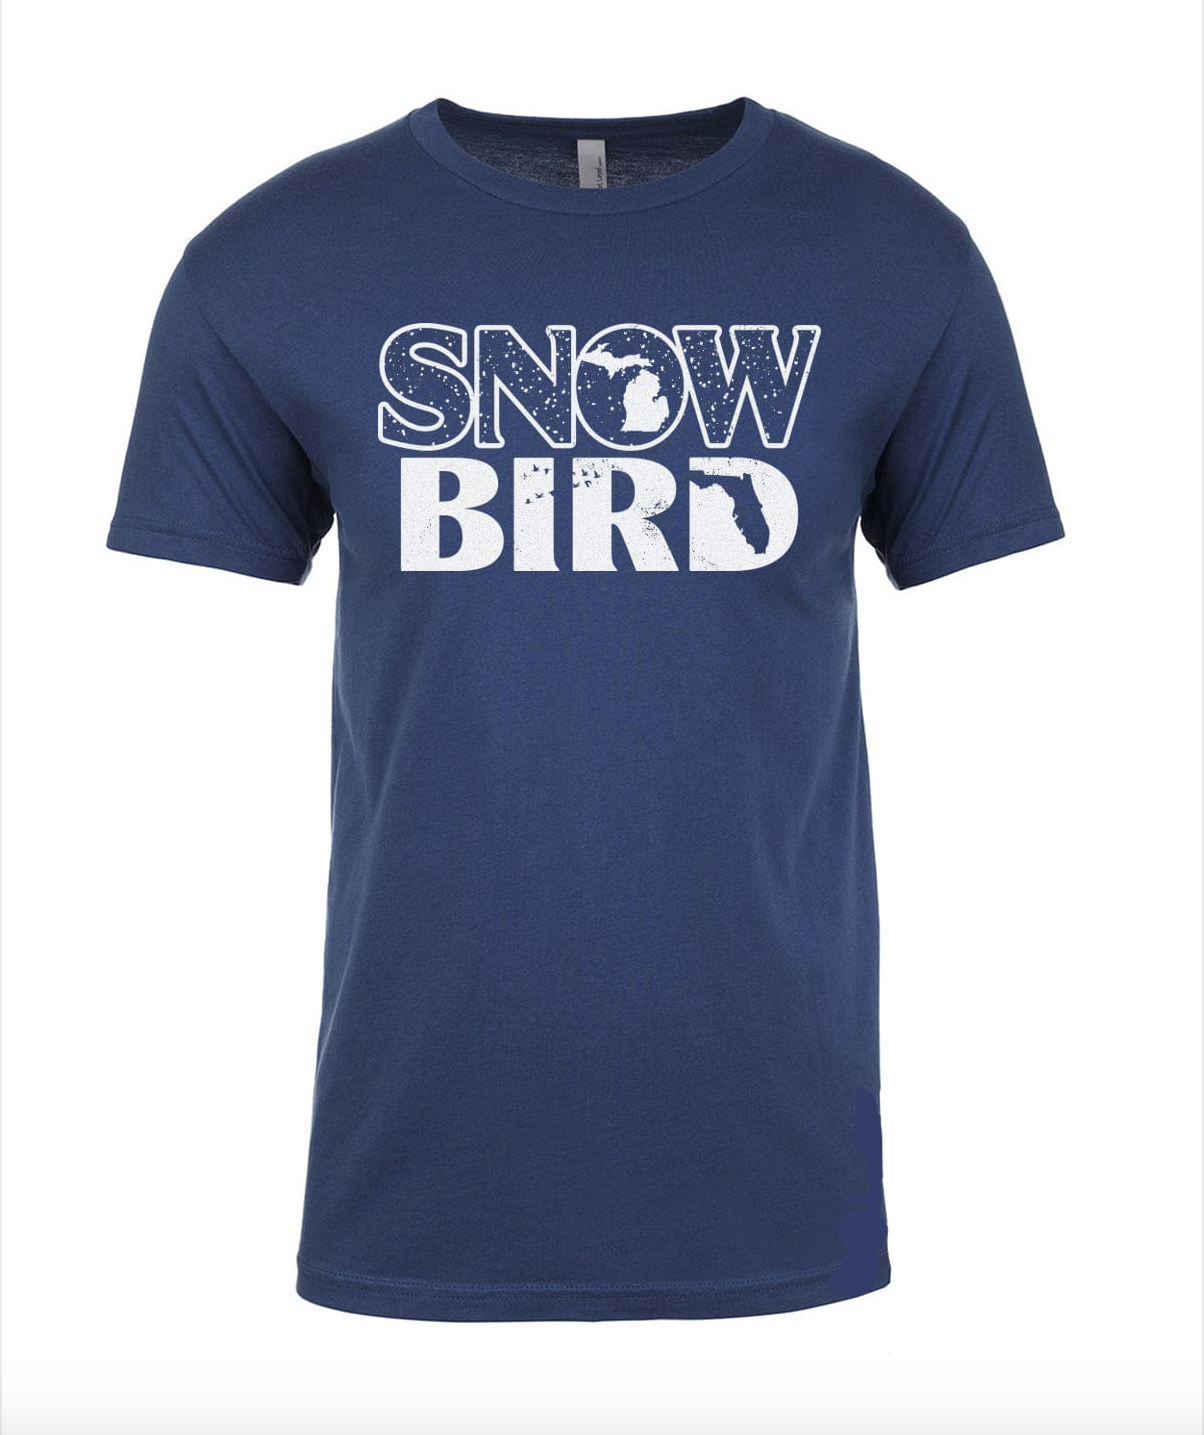 Snow Bird Tee